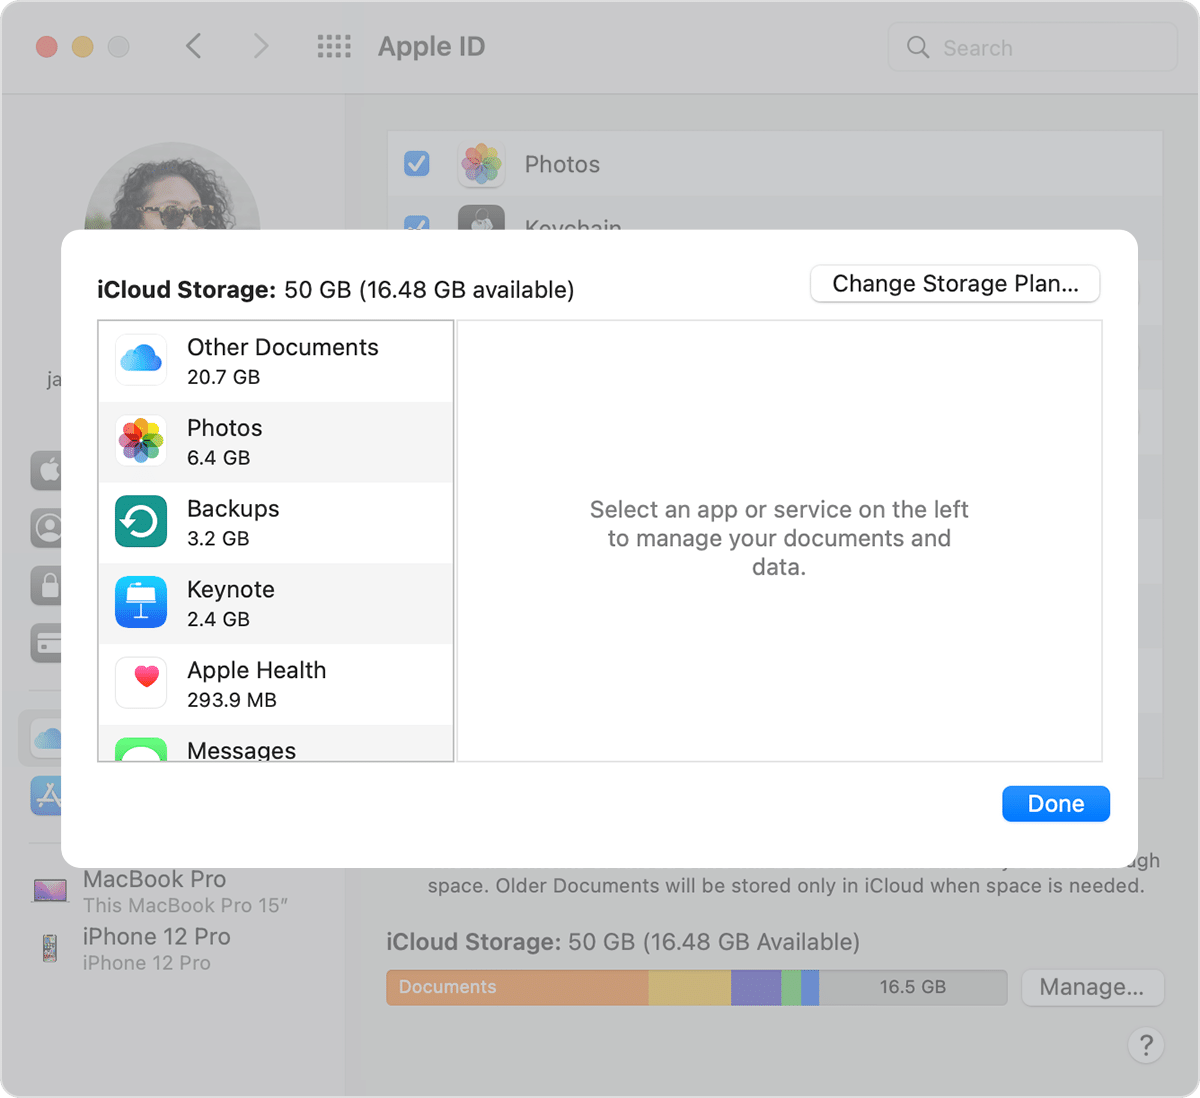 Haz clic en Cambiar plan para elegir un nuevo plan de almacenamiento de iCloud+ en el Mac